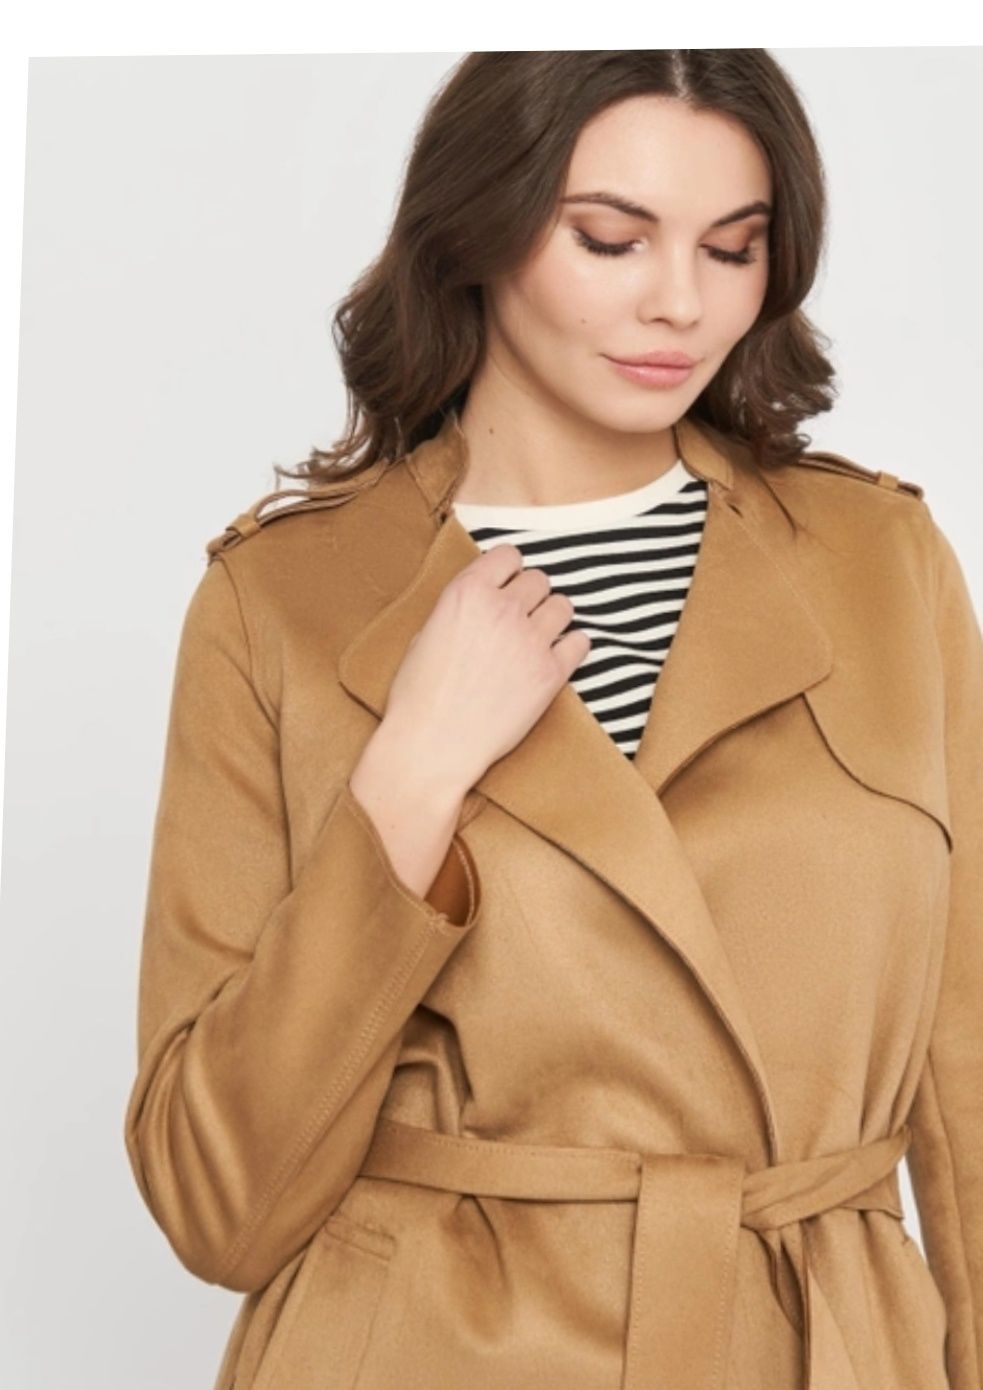 Елегантне пальто 44 розміру фірми H&M